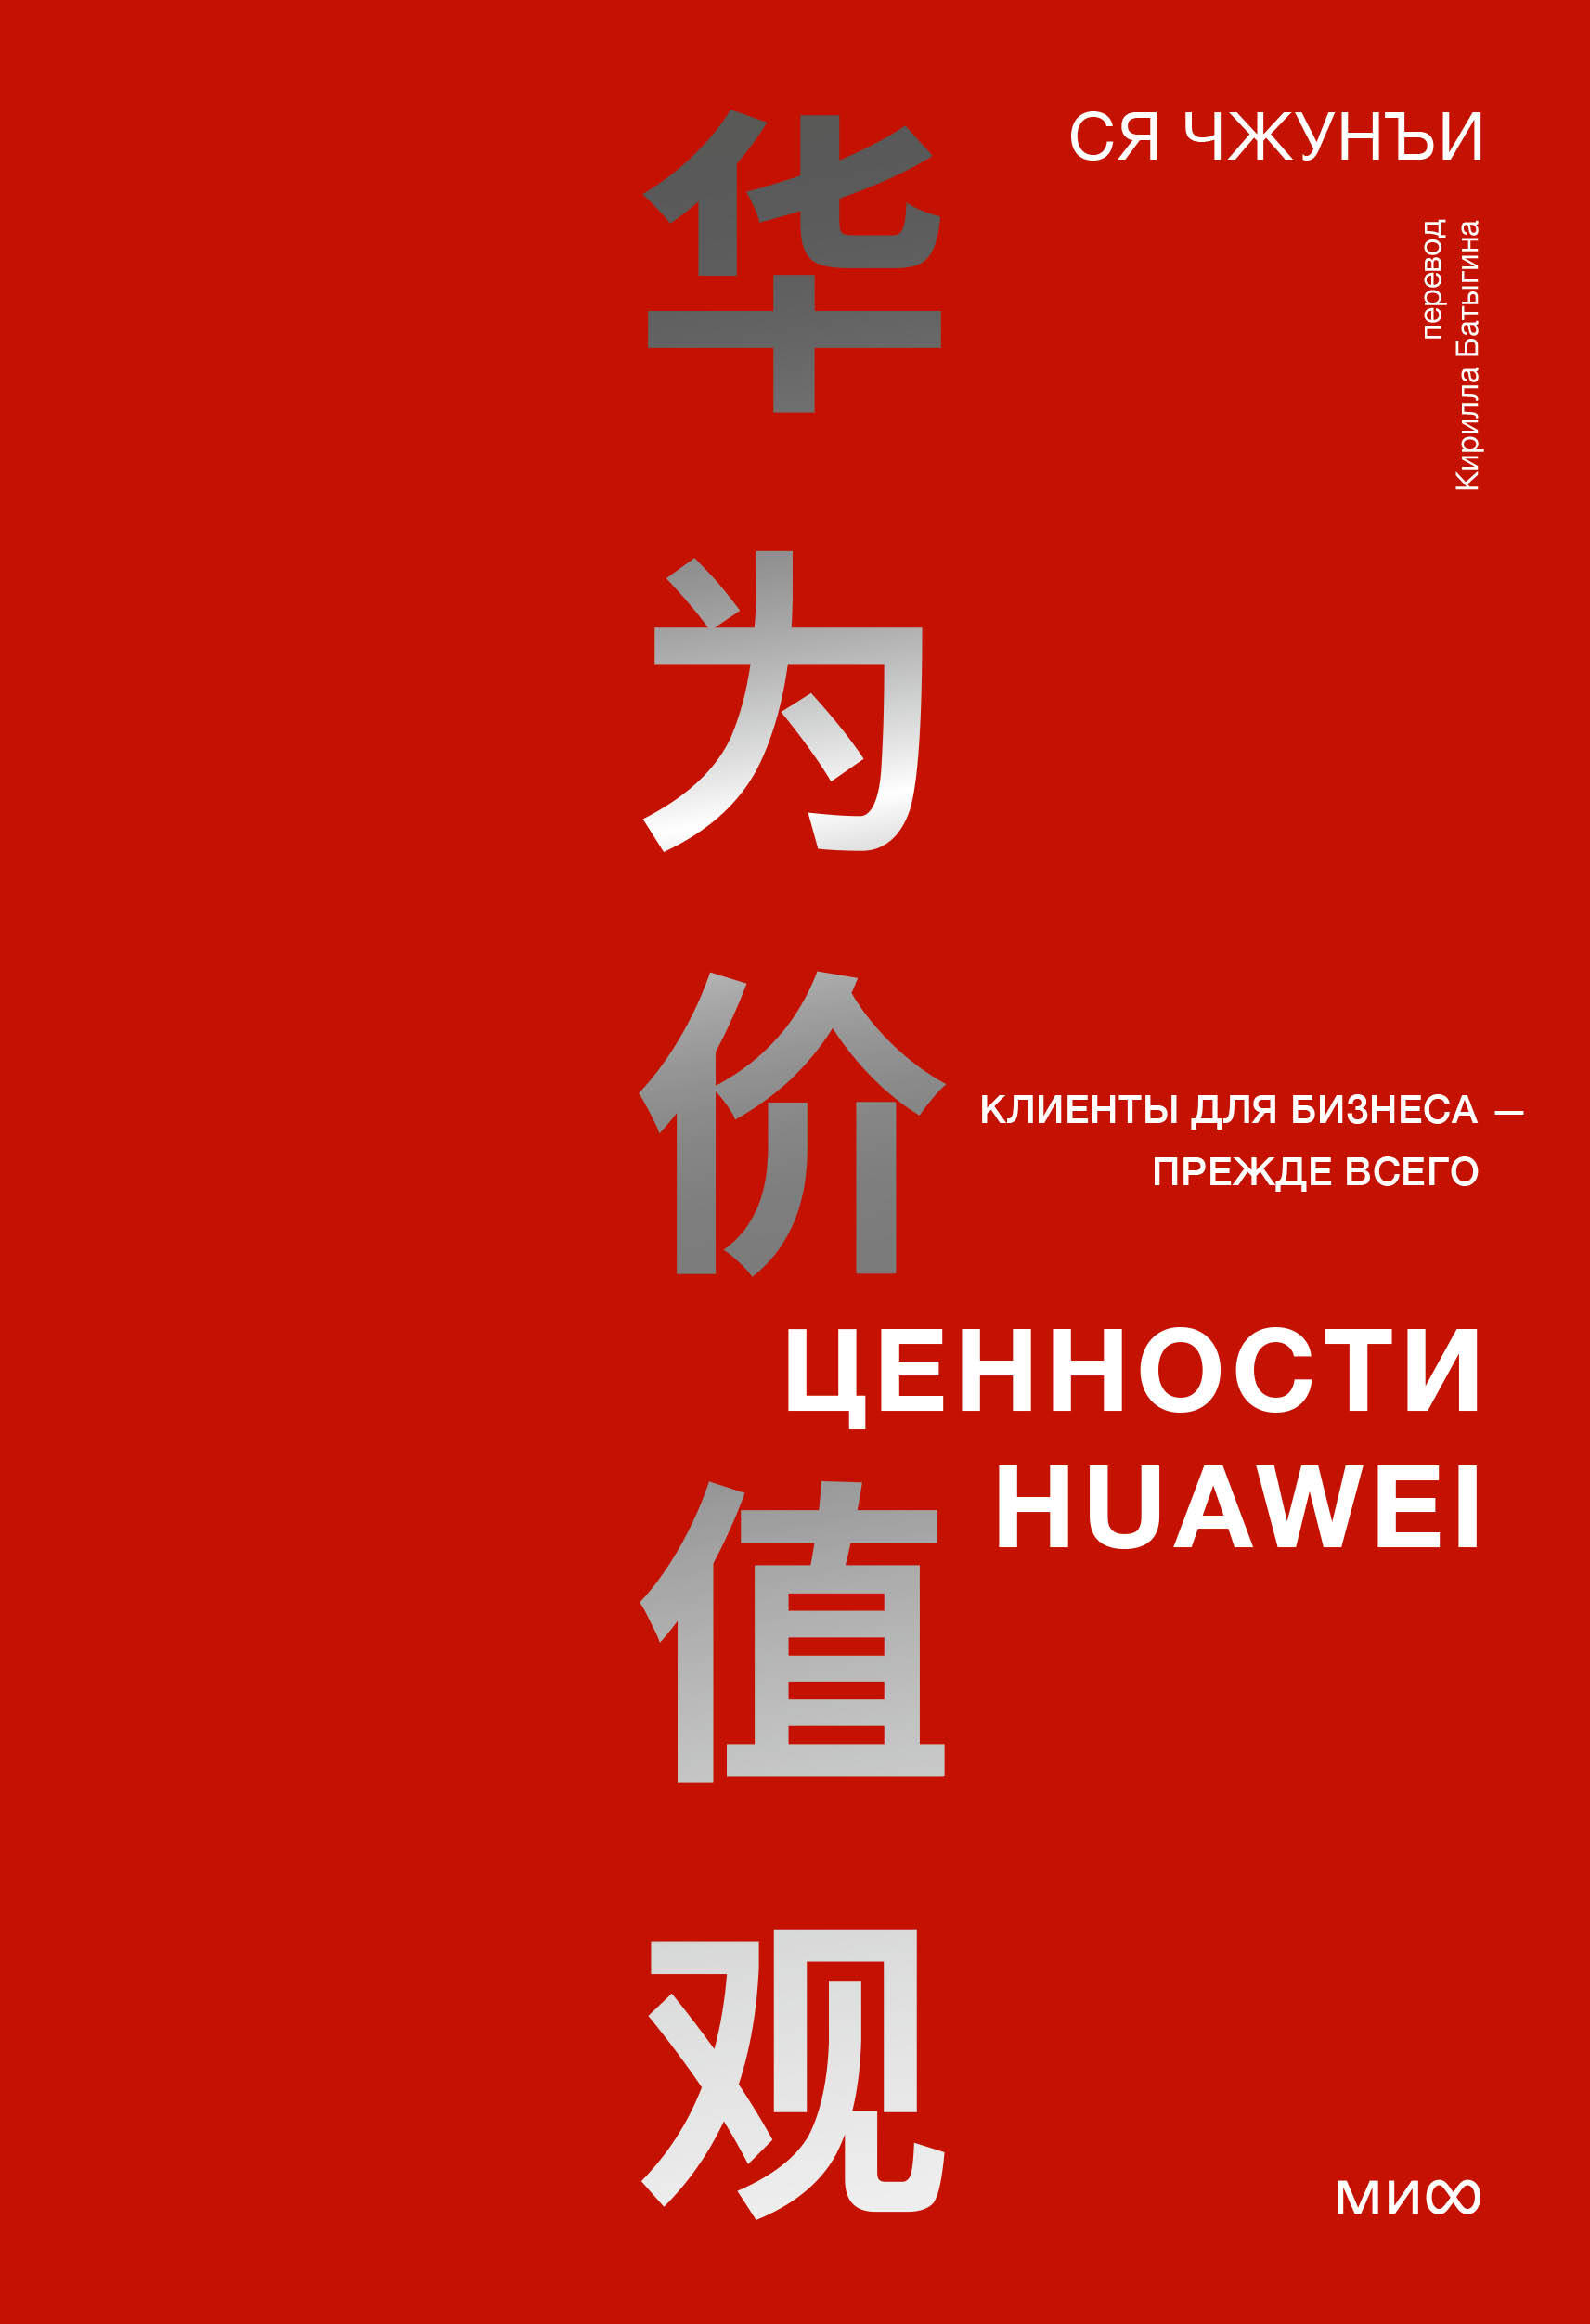  Huawei   - 